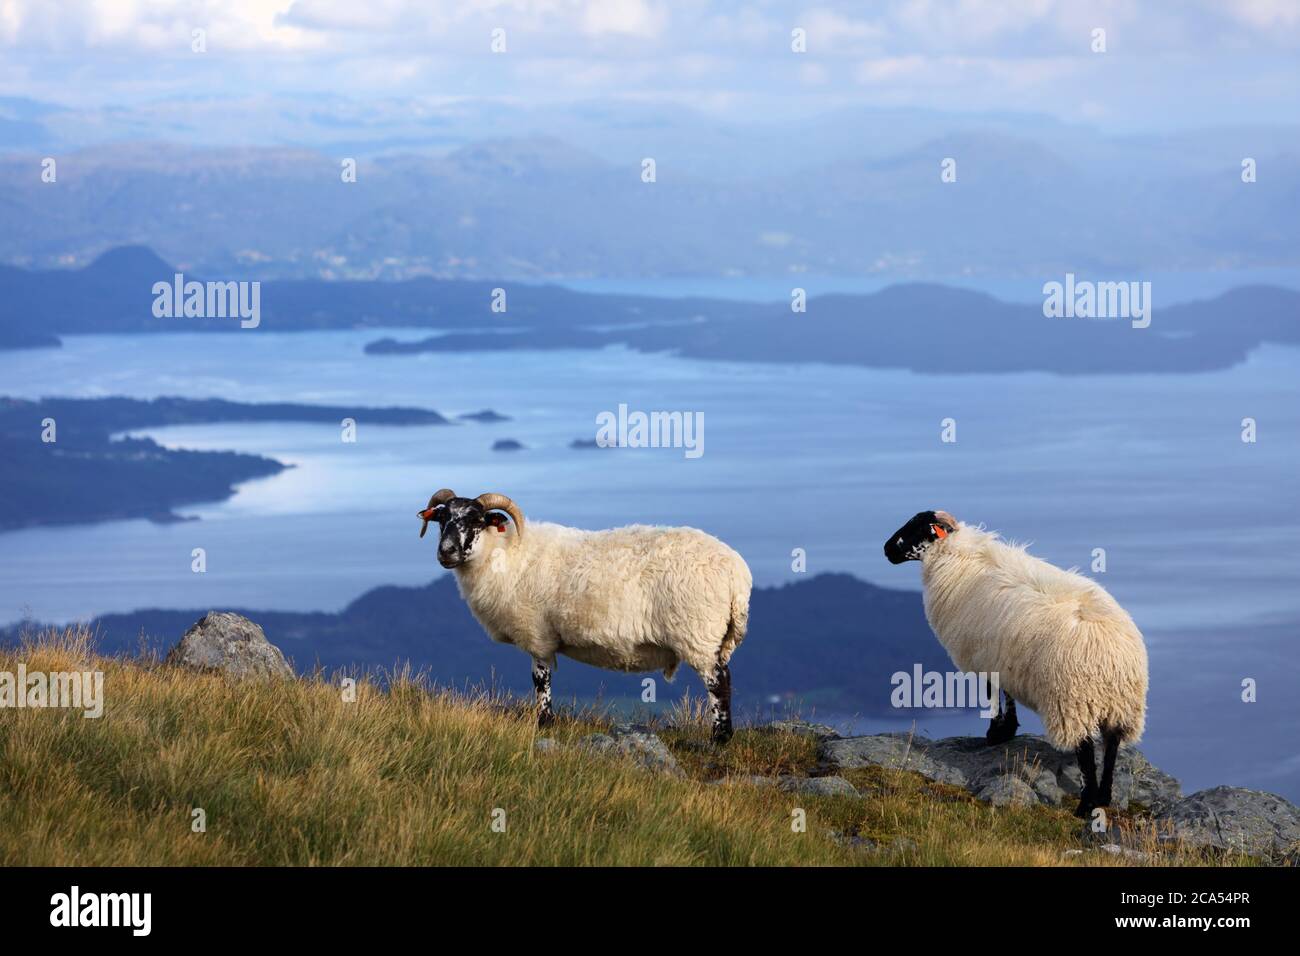 Les moutons écossais à Blackface se reproduisent en Norvège. L'agriculture de l'île Stord. Banque D'Images